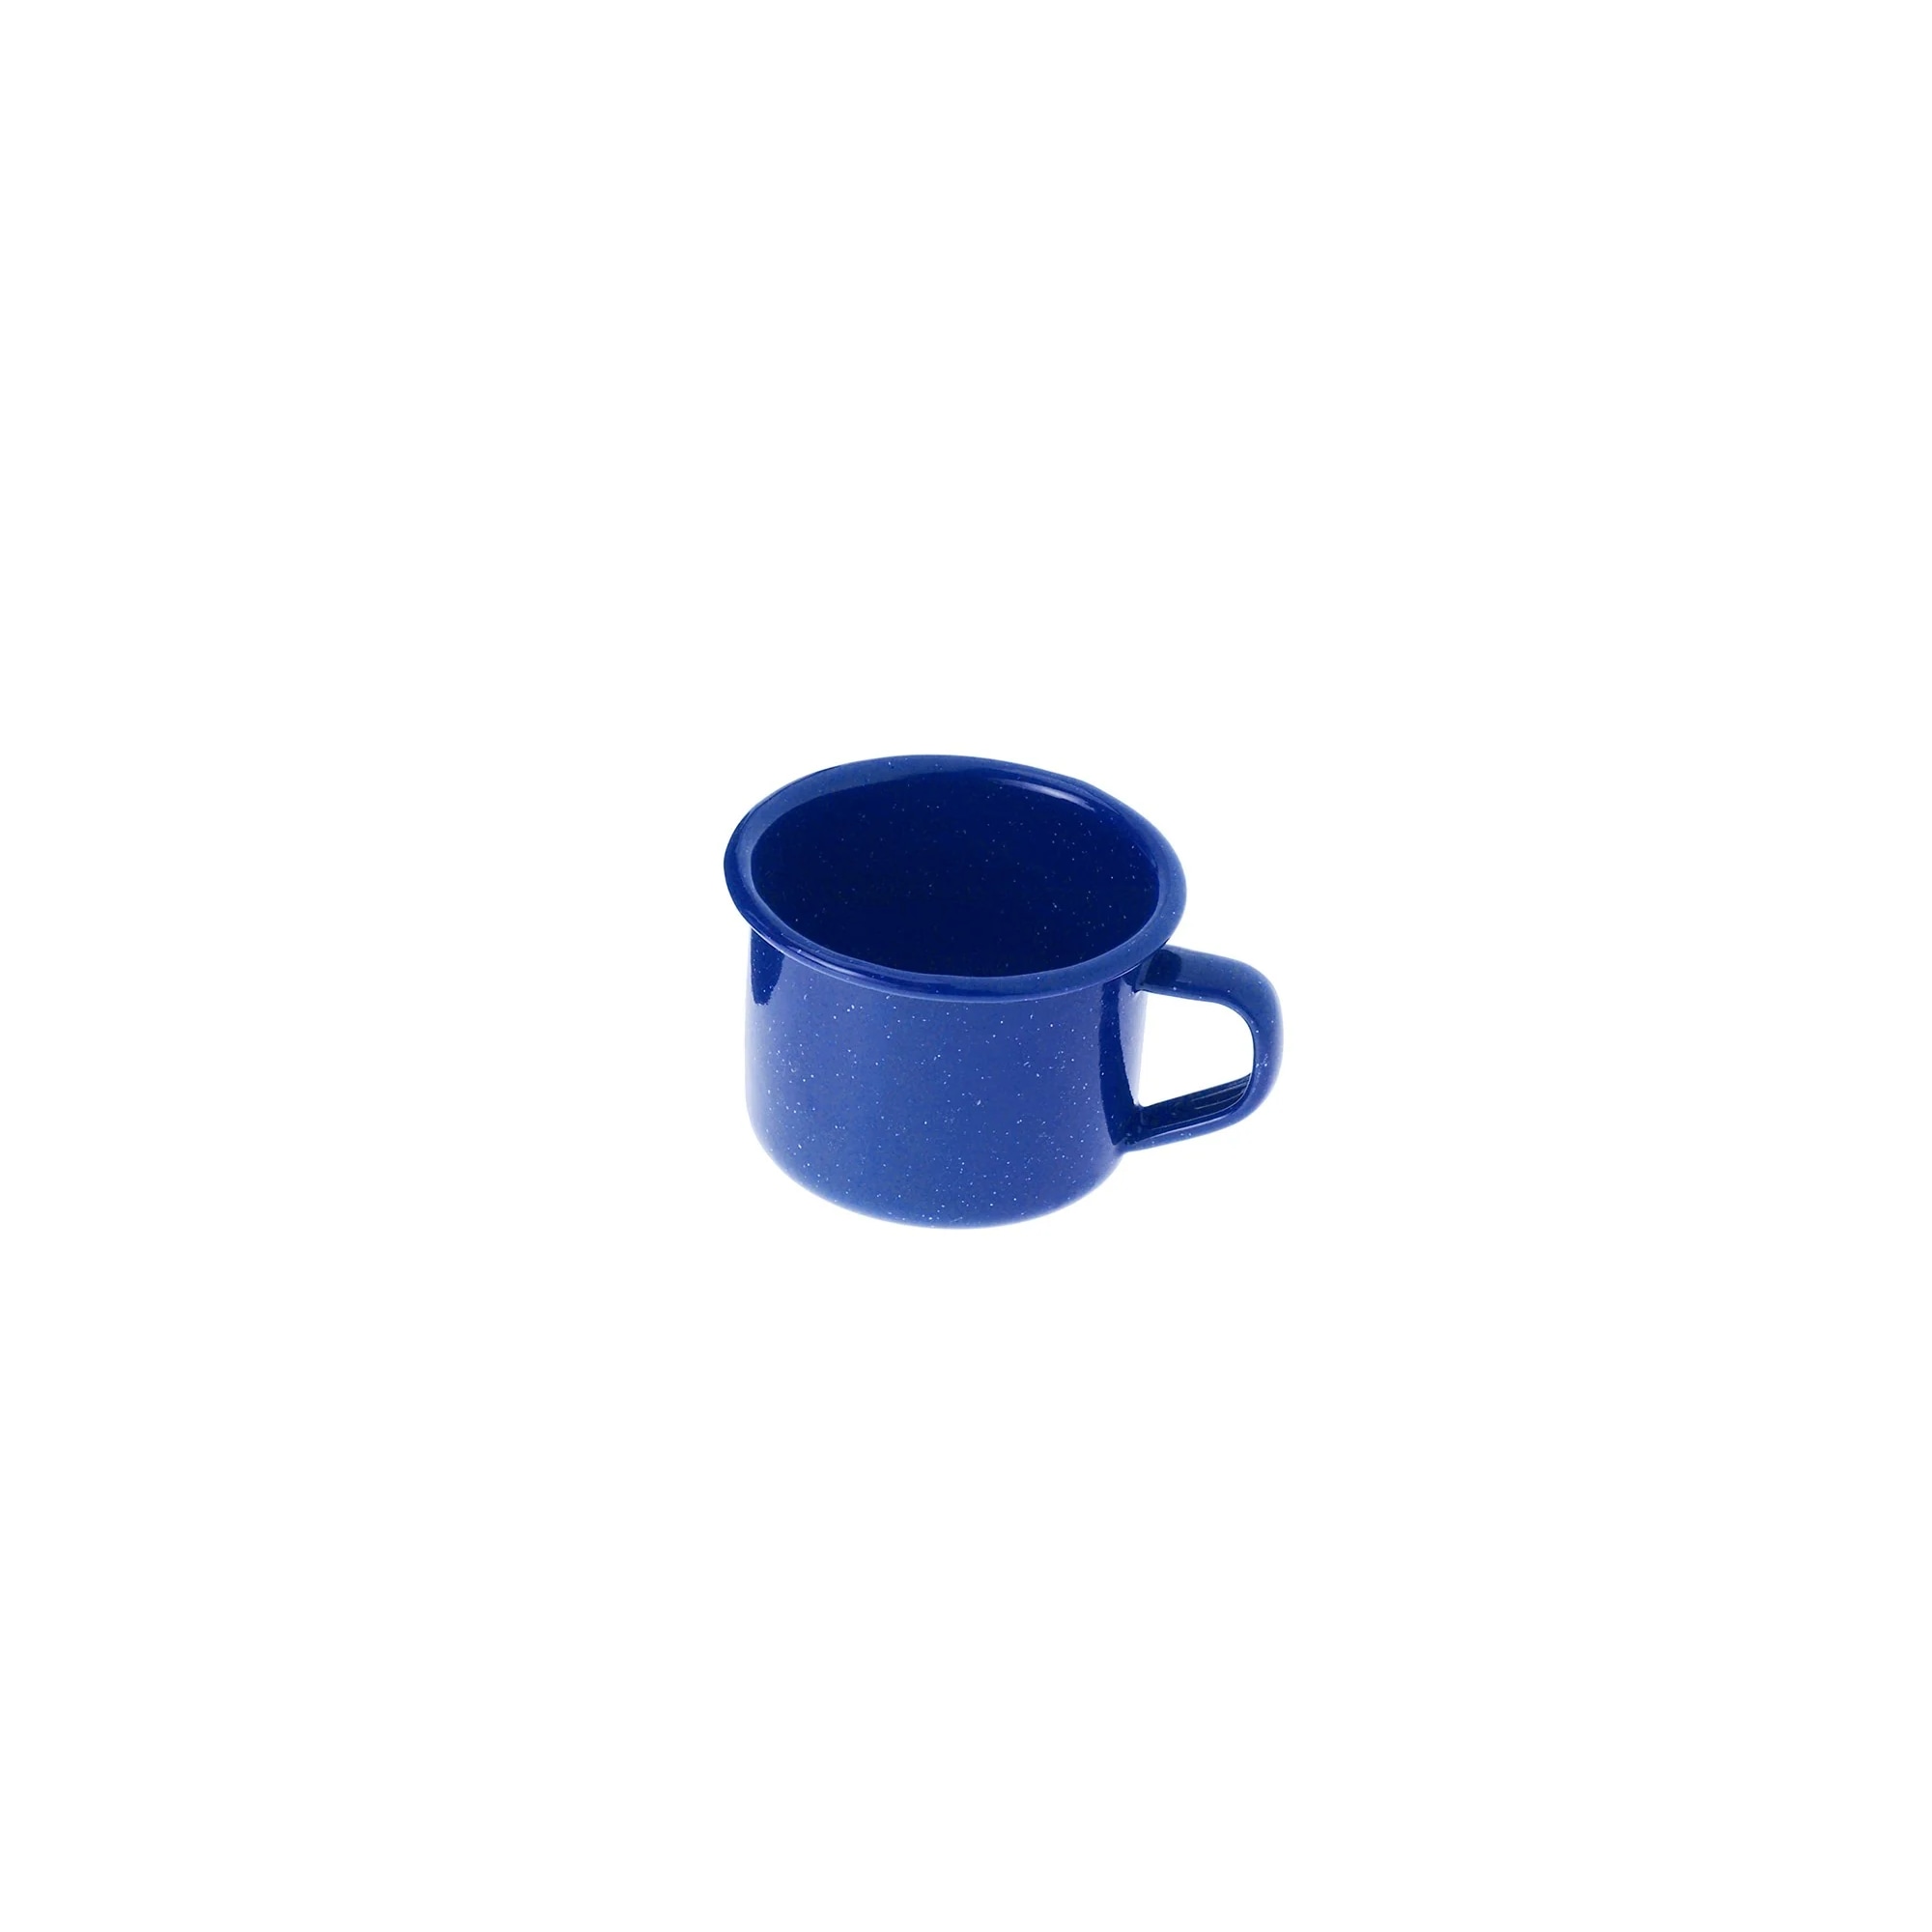 Enamelware Cup 4oz Blue